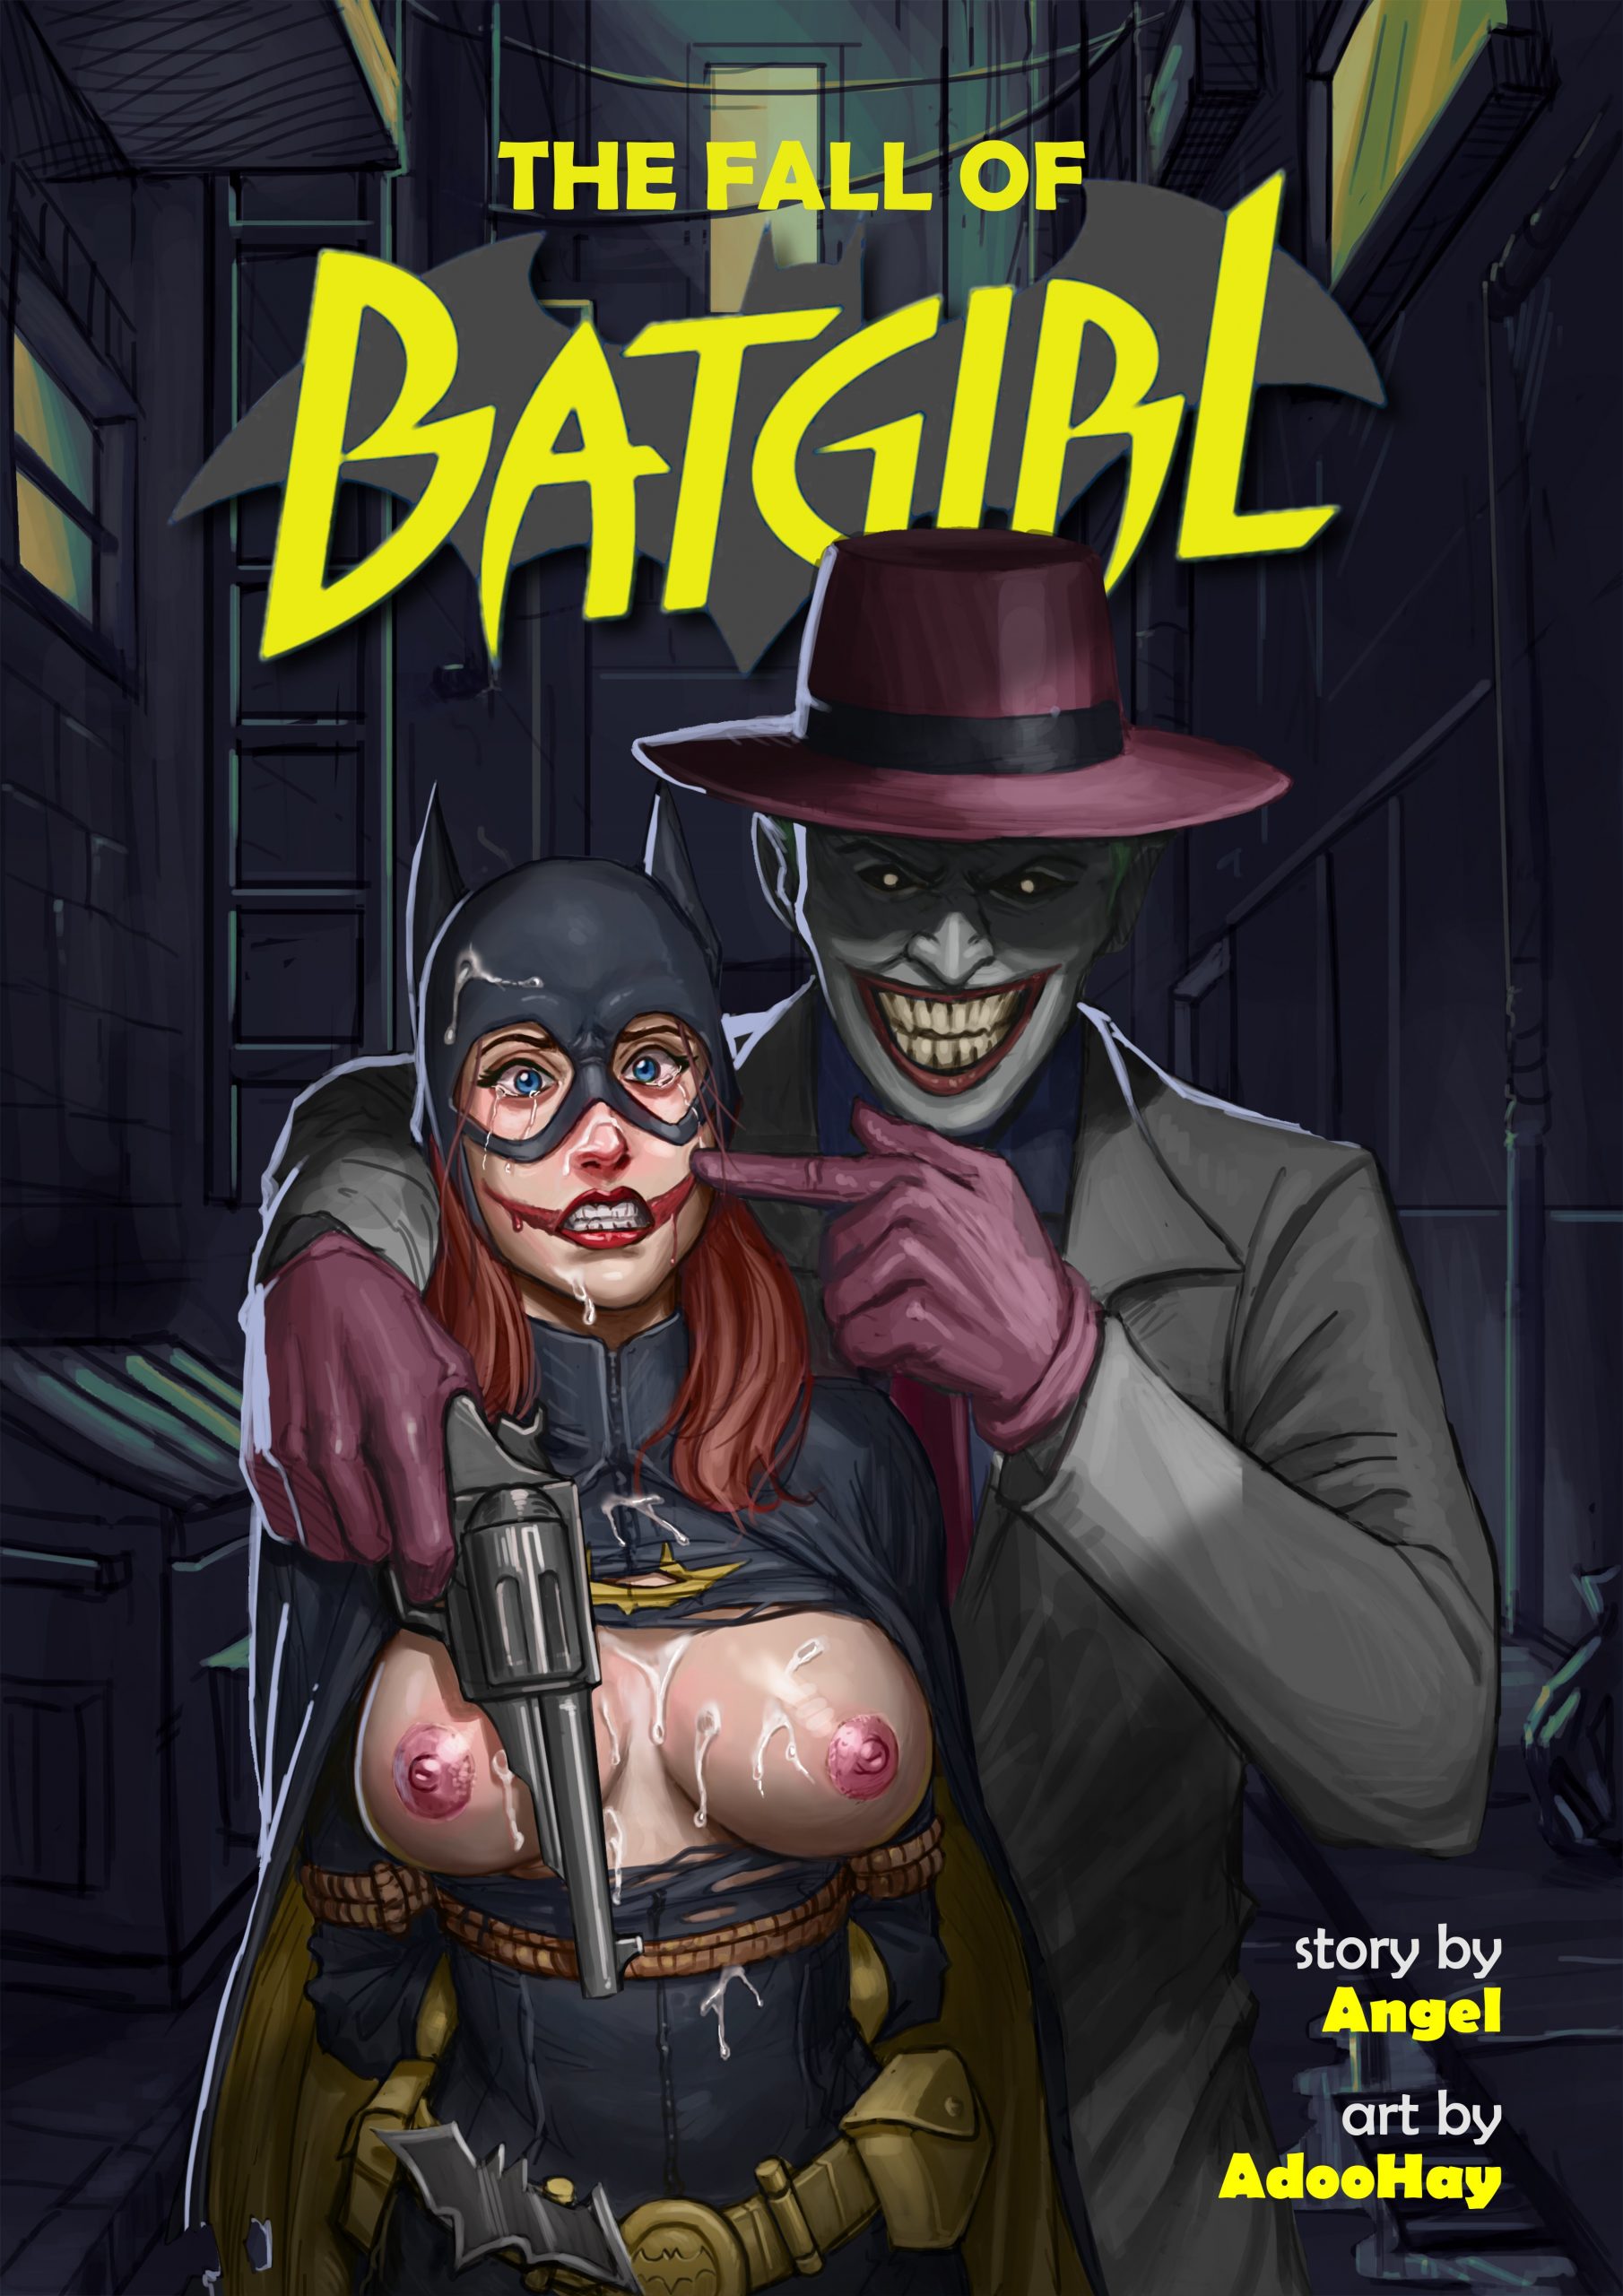 Sexy batgirl and batman comic porno